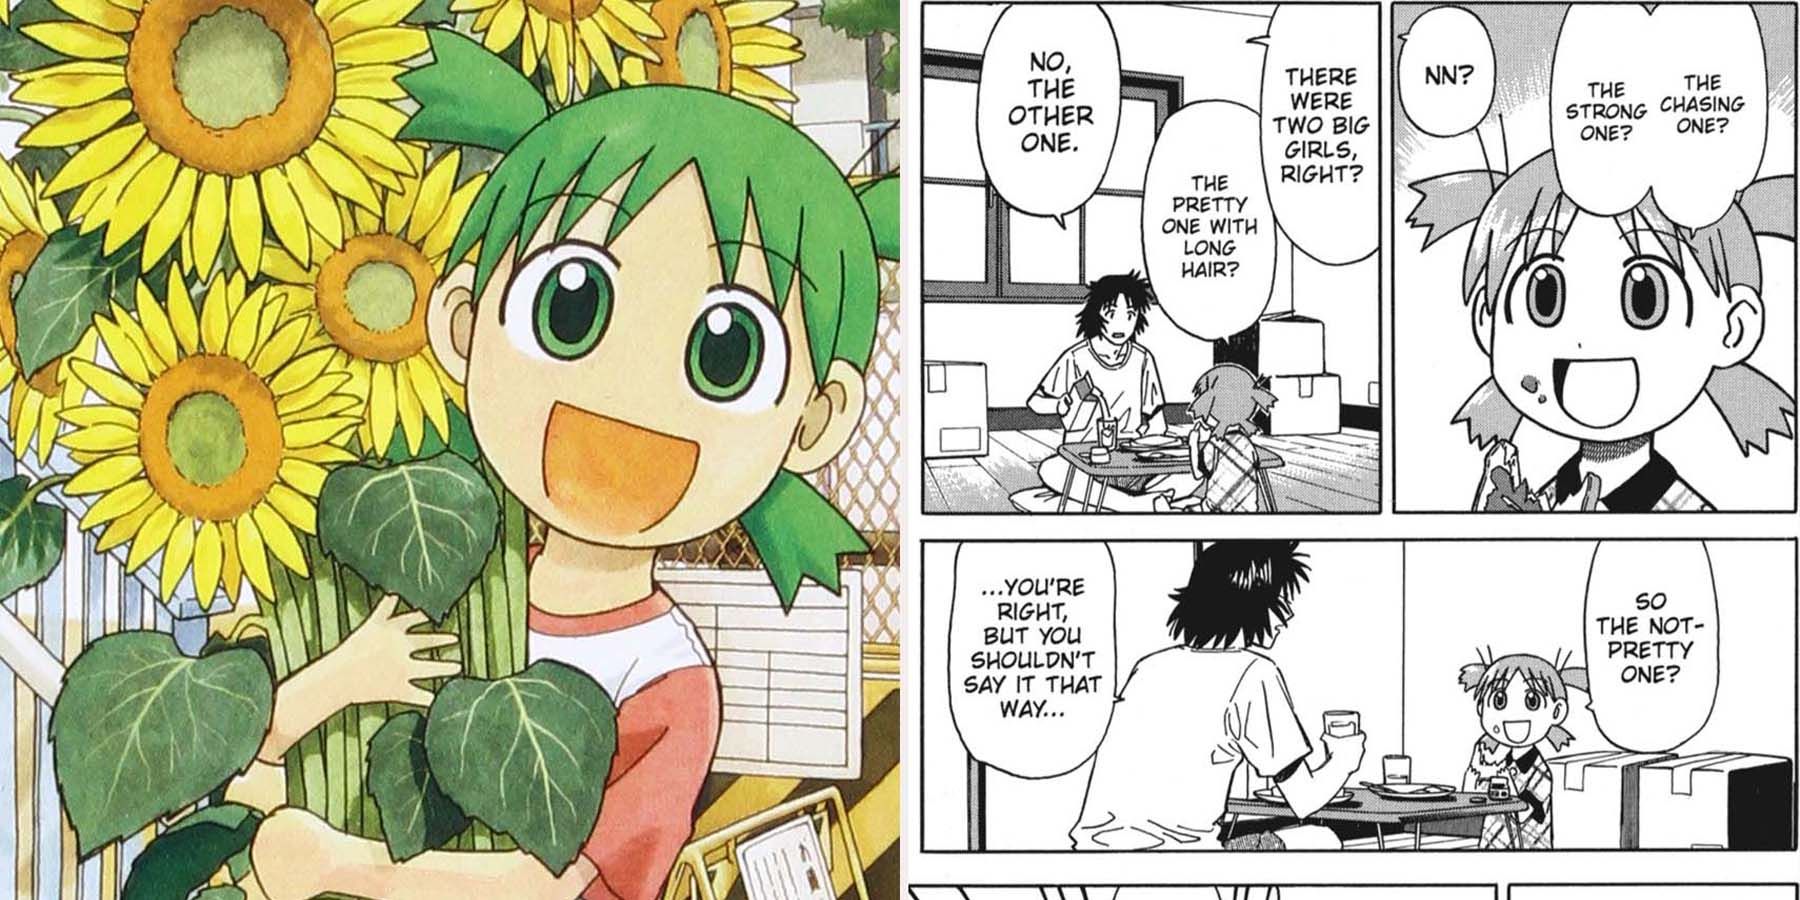 Yotsuba&! manga funny